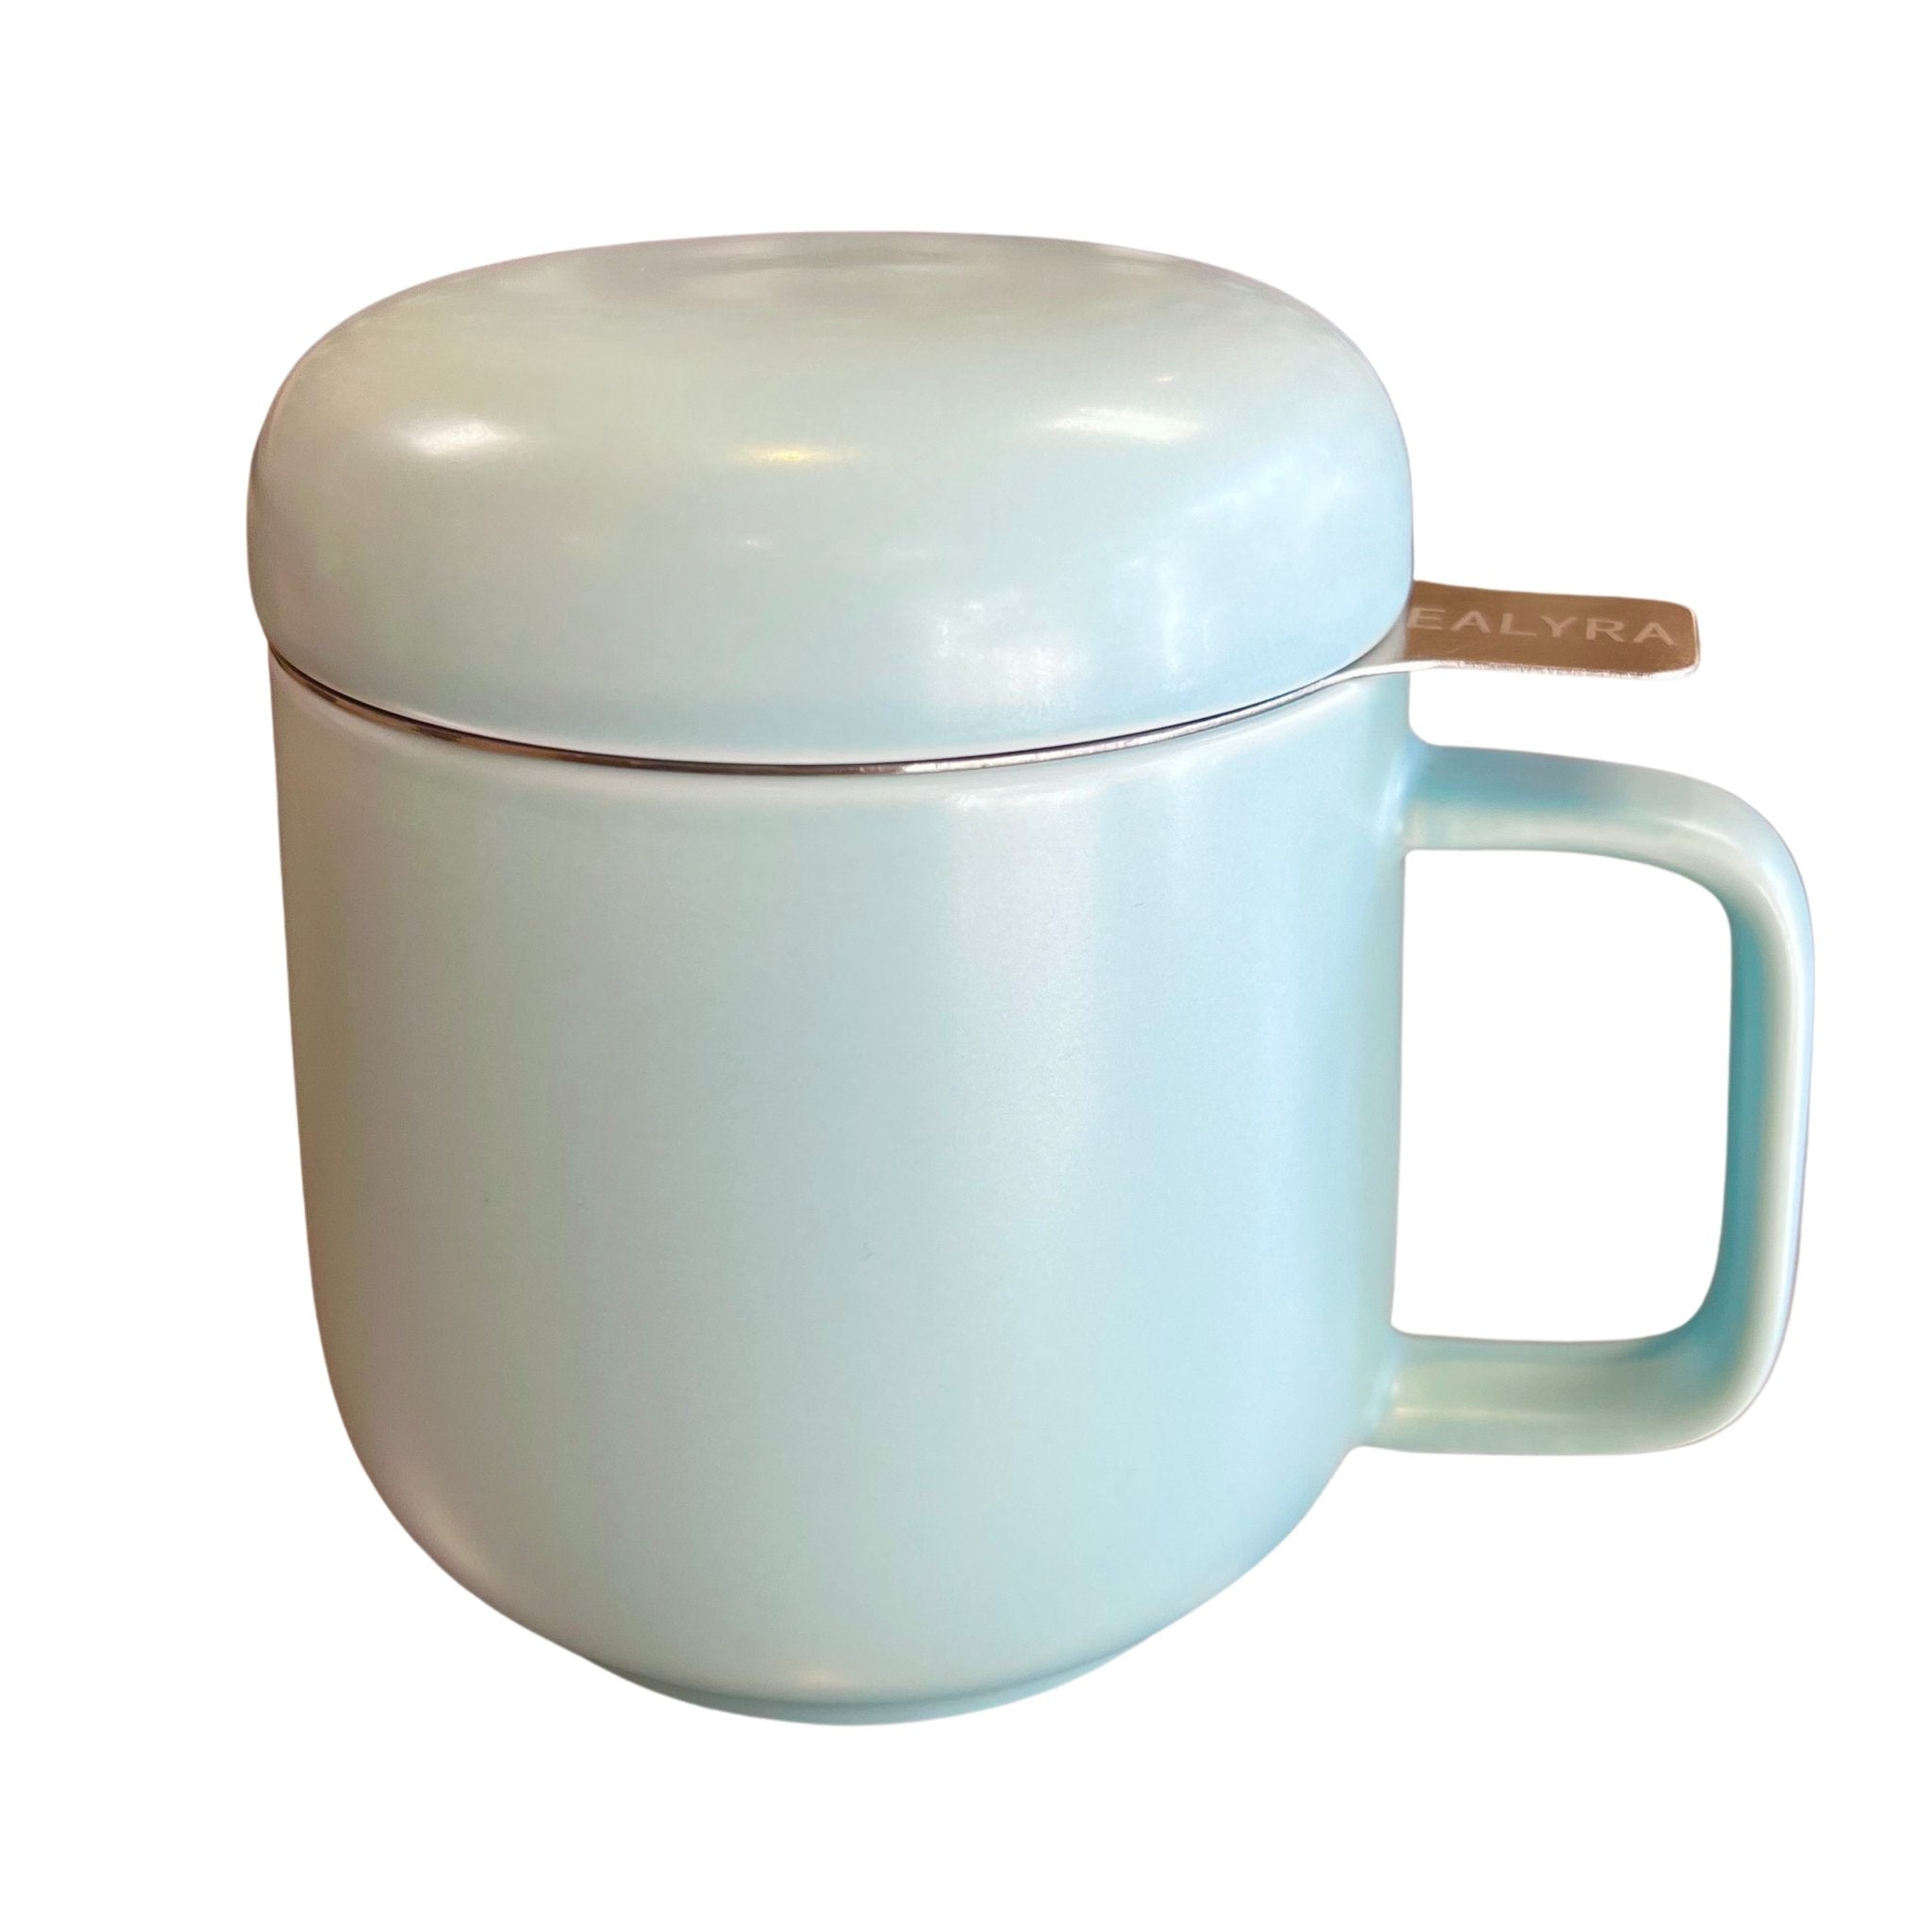 Tealyra Sumo Ceramic Tea Mug - Loose Leaf Tea Market